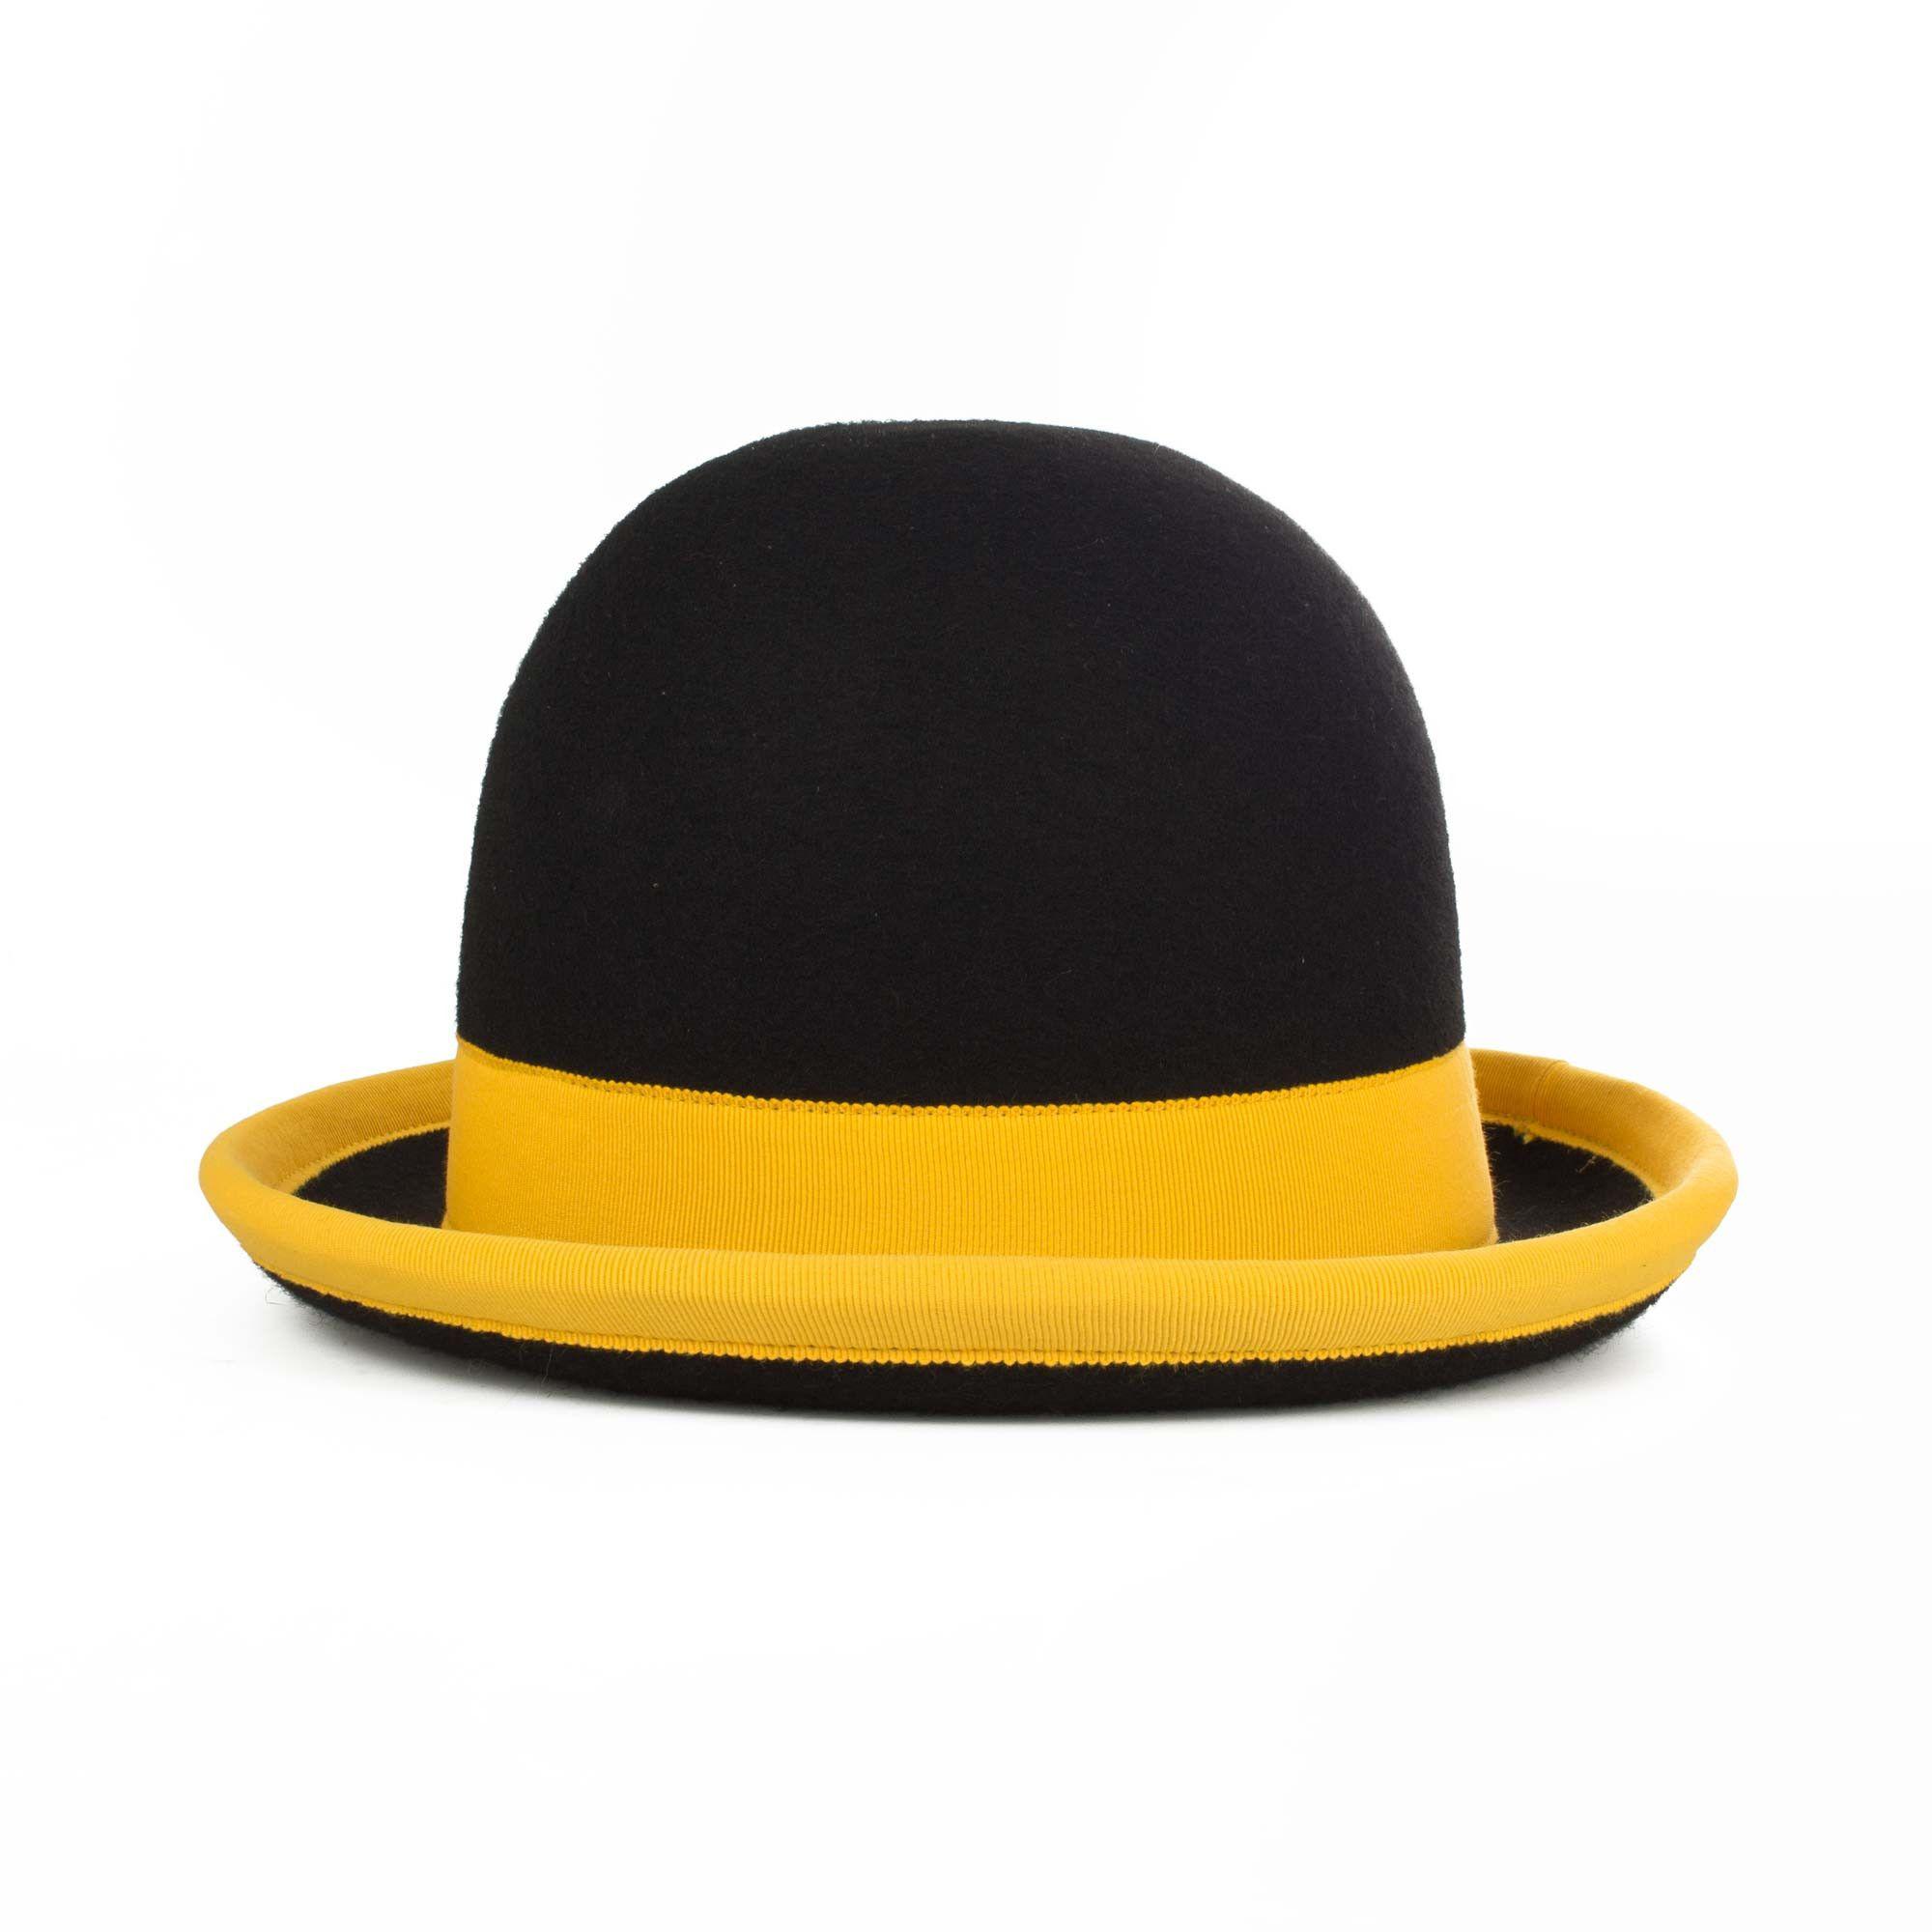 Round Black and Yellow Logo - Nils Poll Round Manipulator Hats Yellow Black